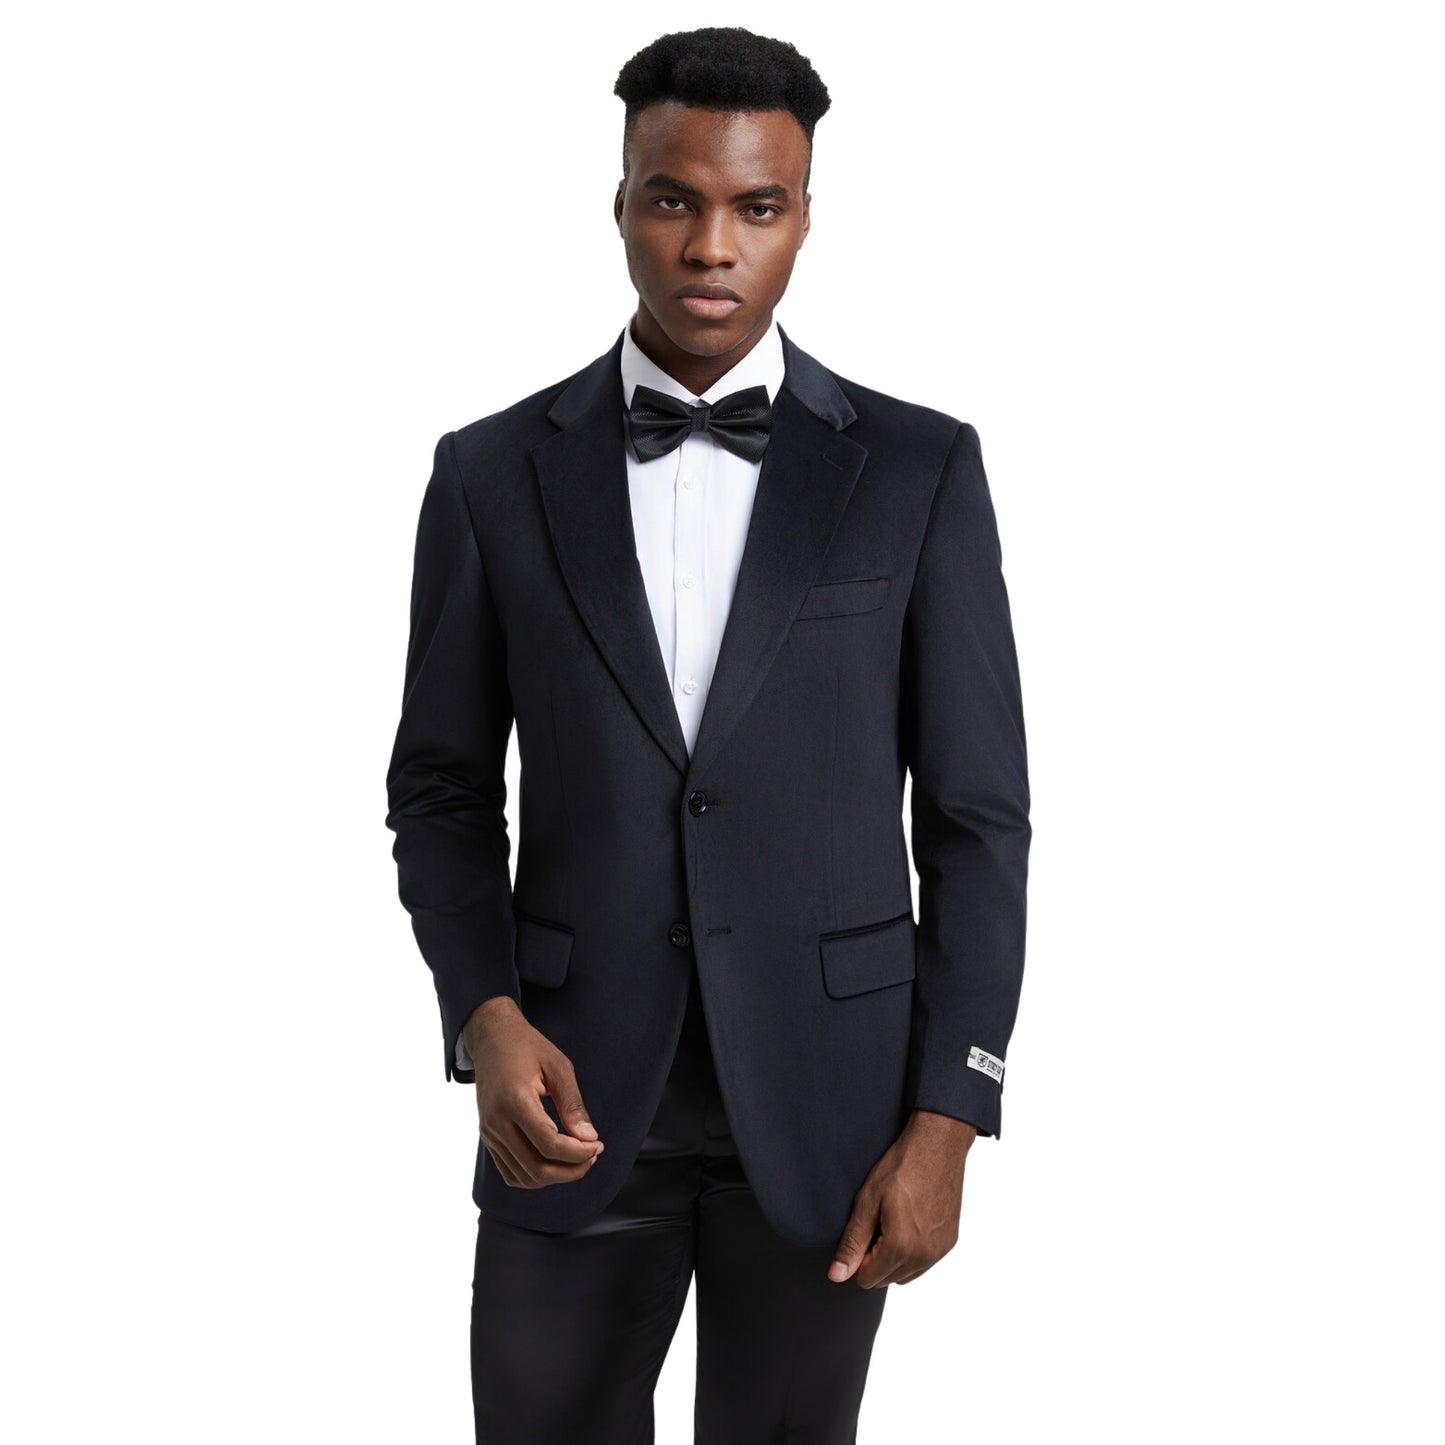 Elegant man in a classic black velvet blazer for formal events.